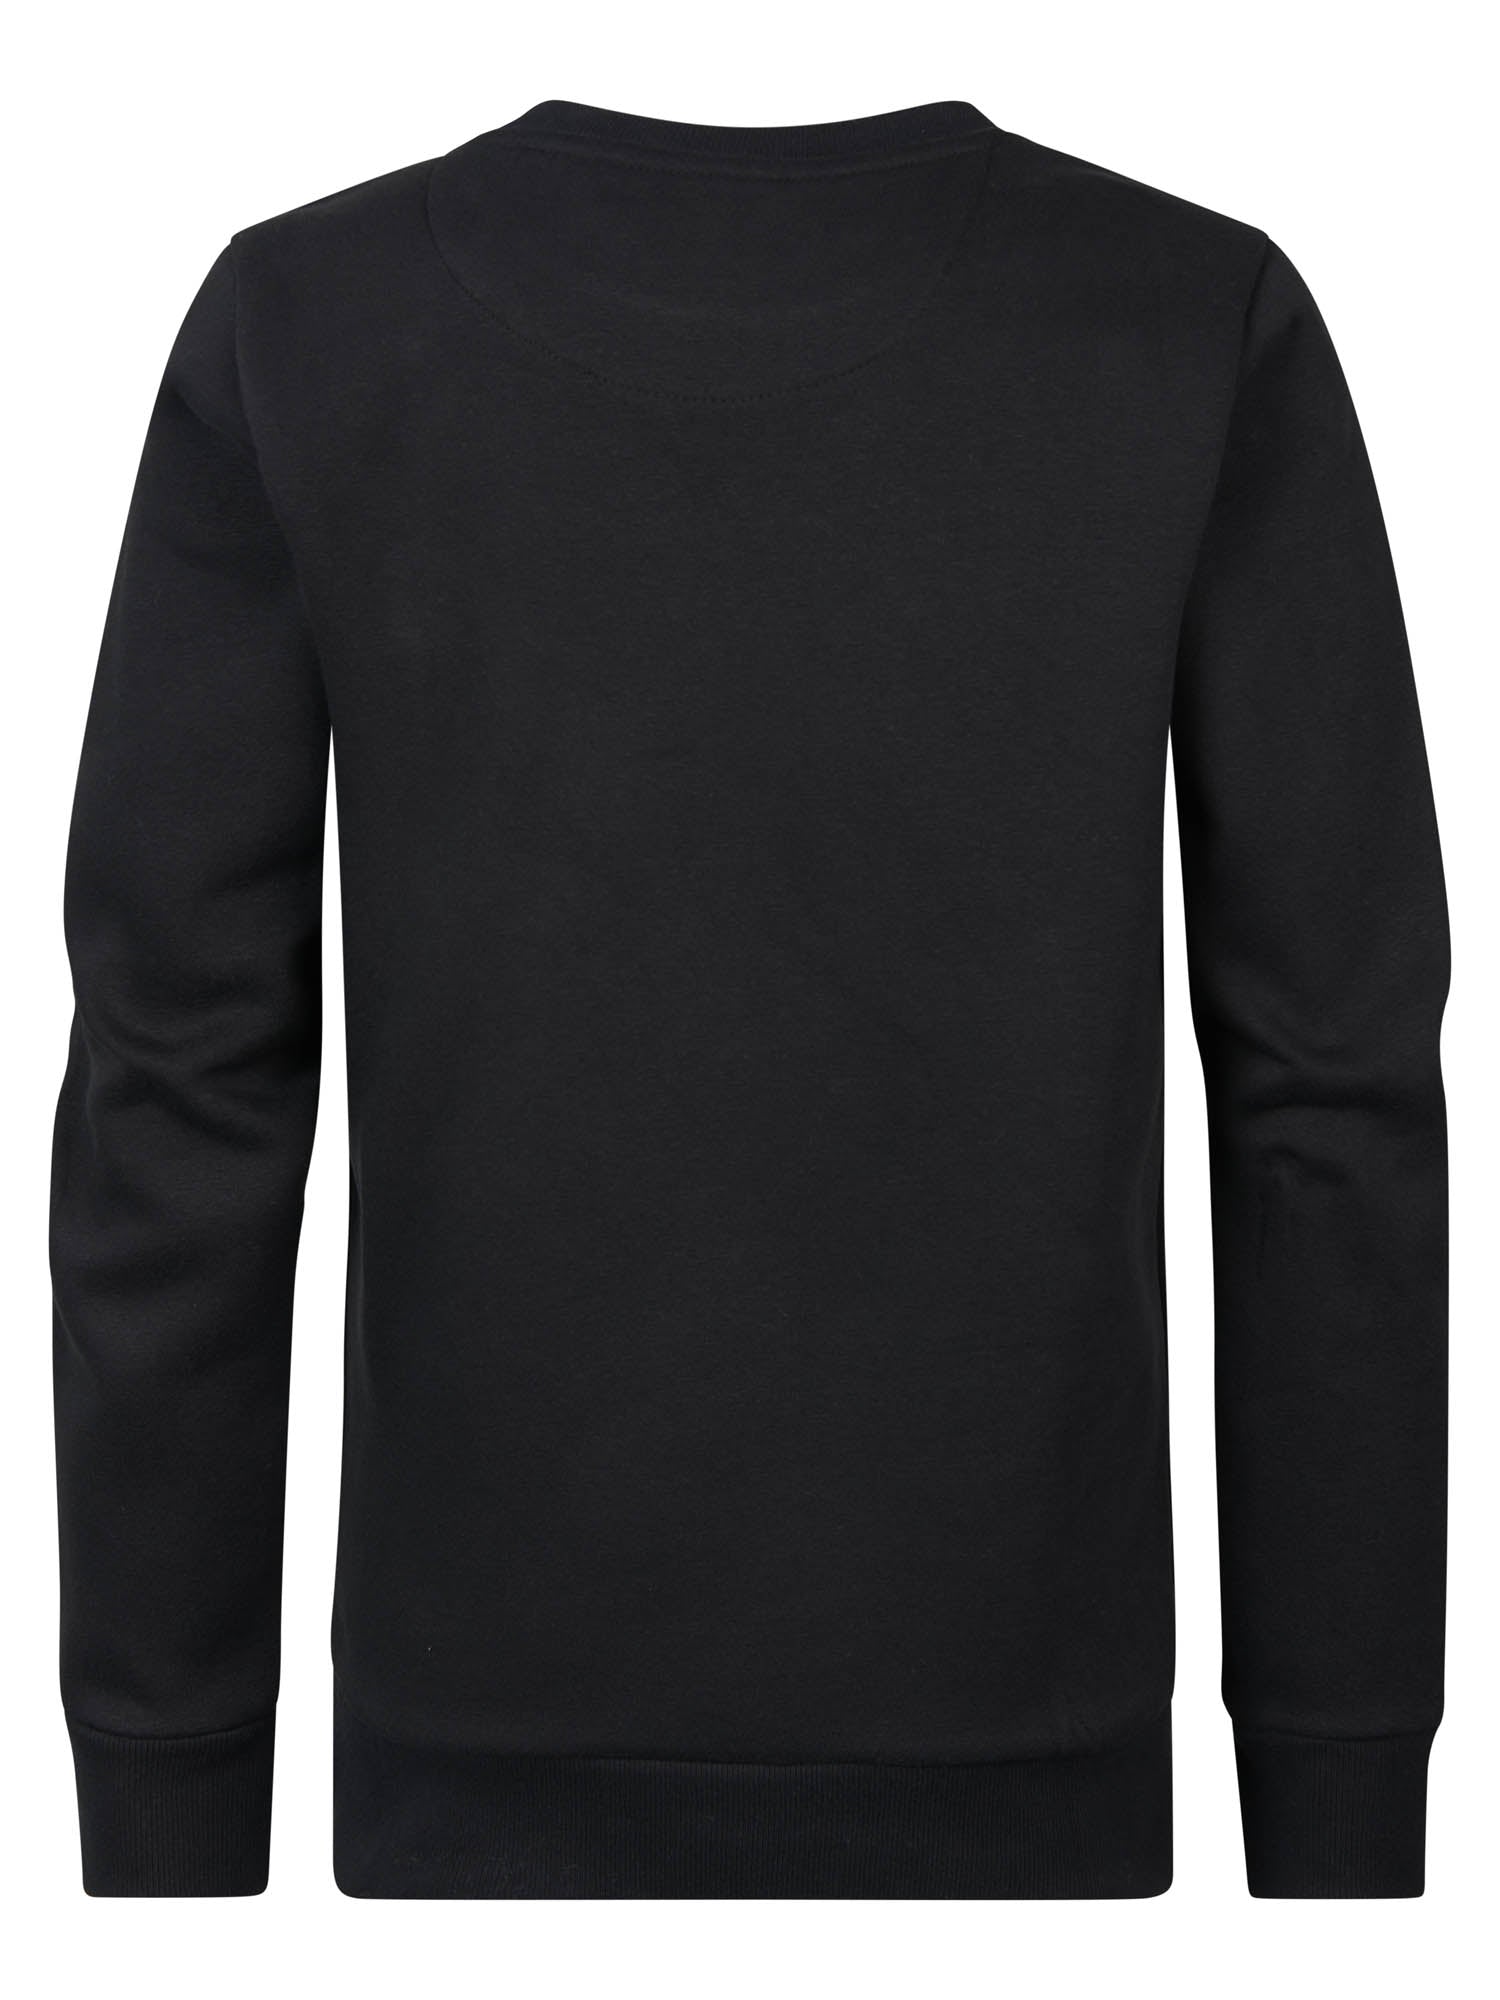 Jongens Sweater Round Neck van Petrol in de kleur Dark Black in maat 164.